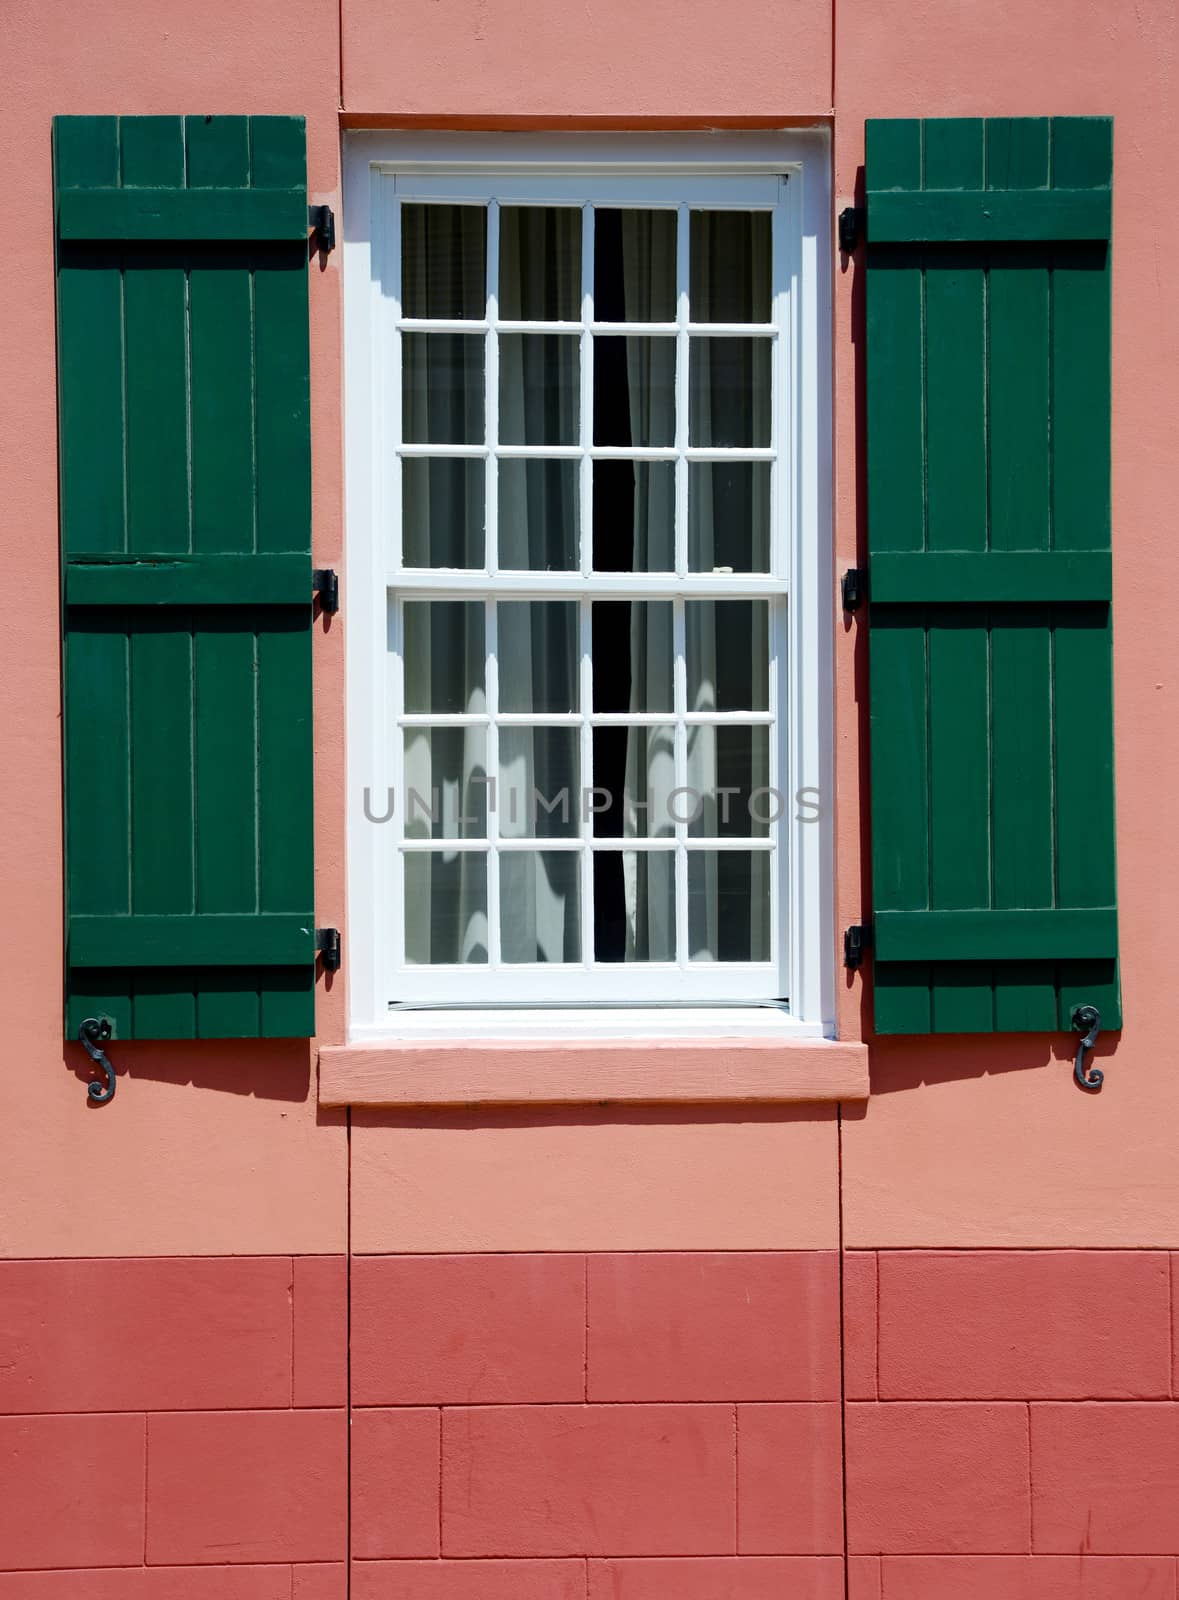 window with green shutters in european village